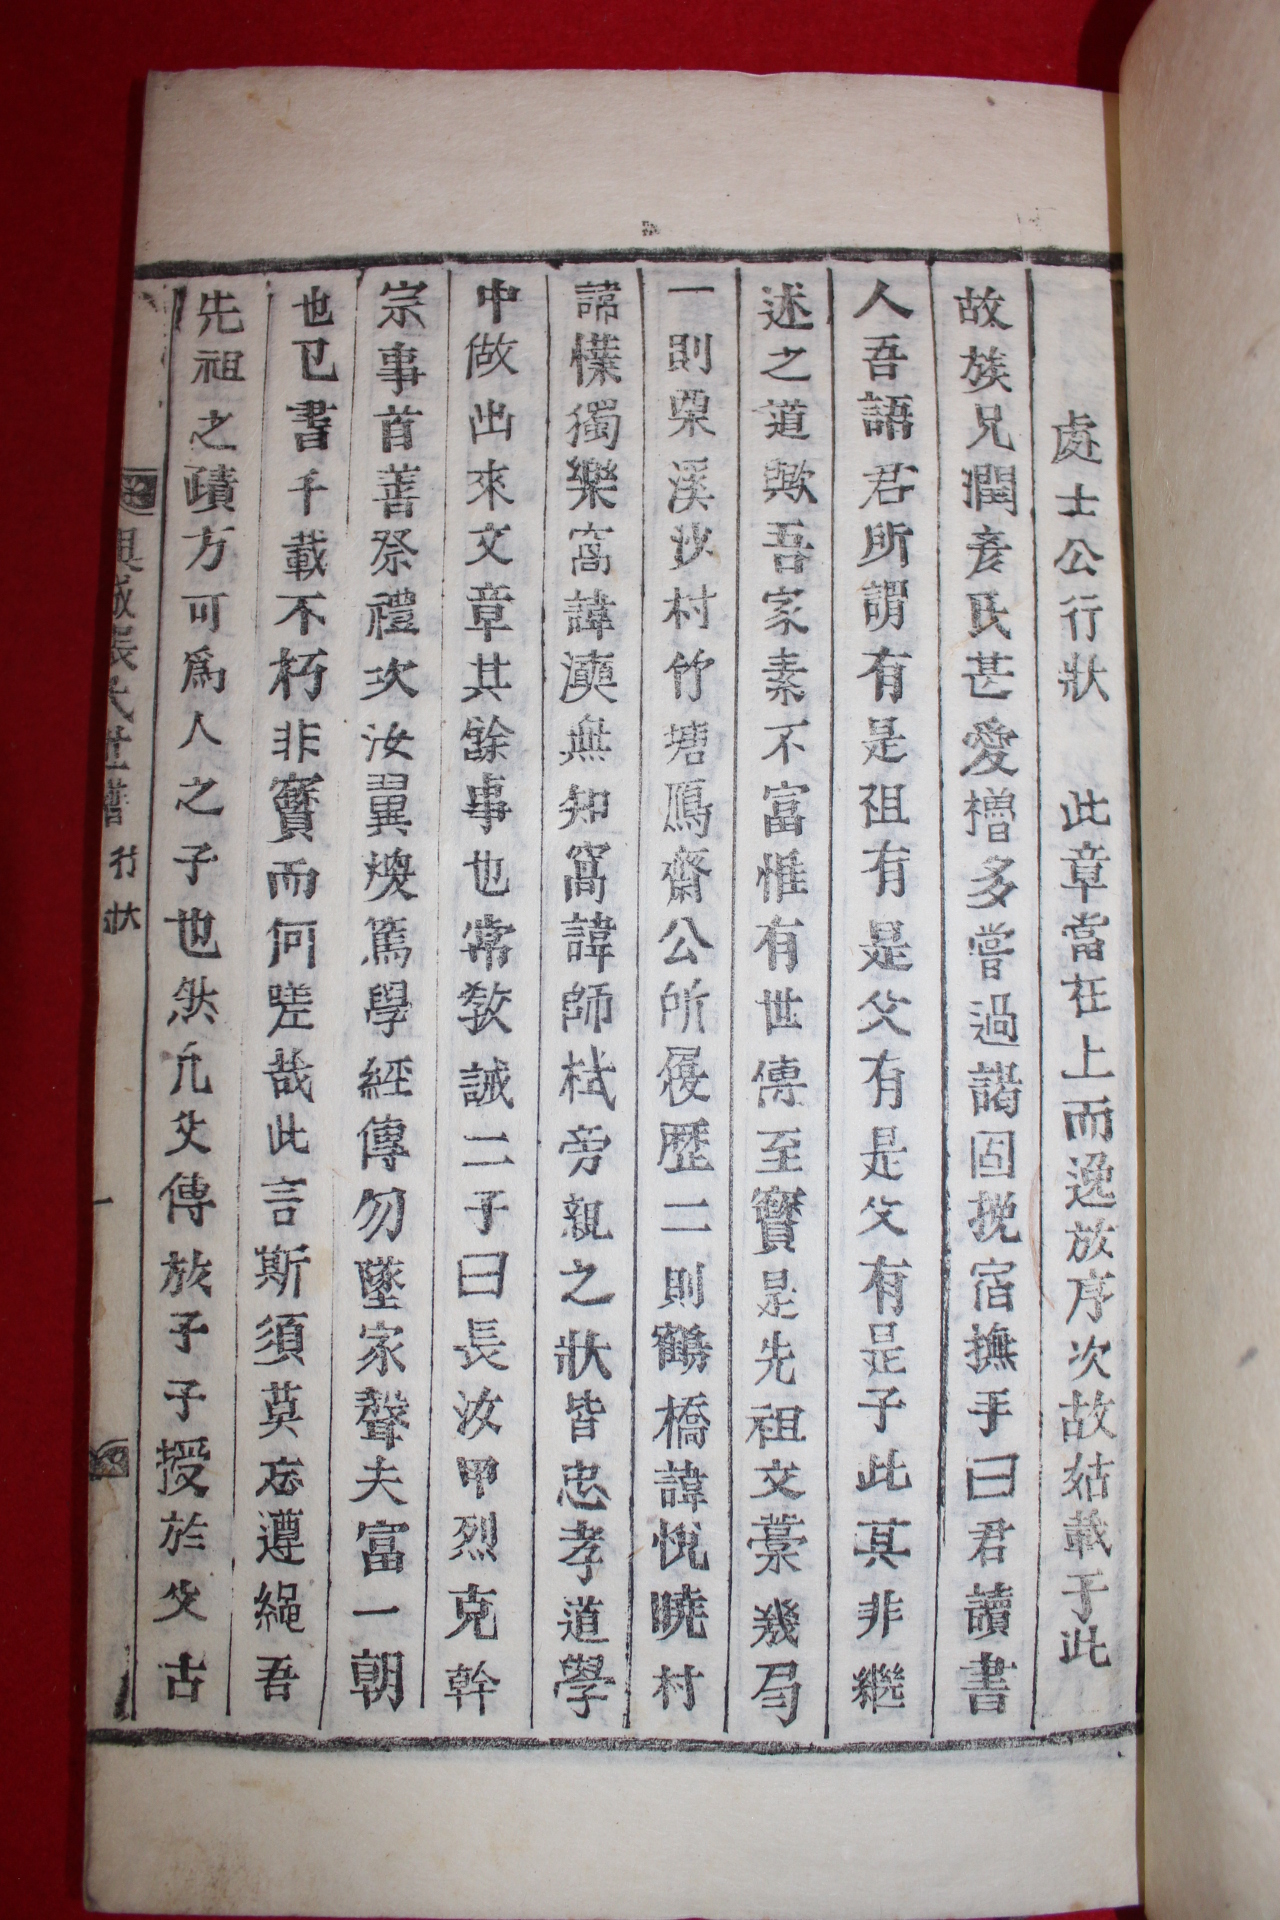 1914년 목활자본 흥성장씨세보(興城張氏世譜),부록 12책완질